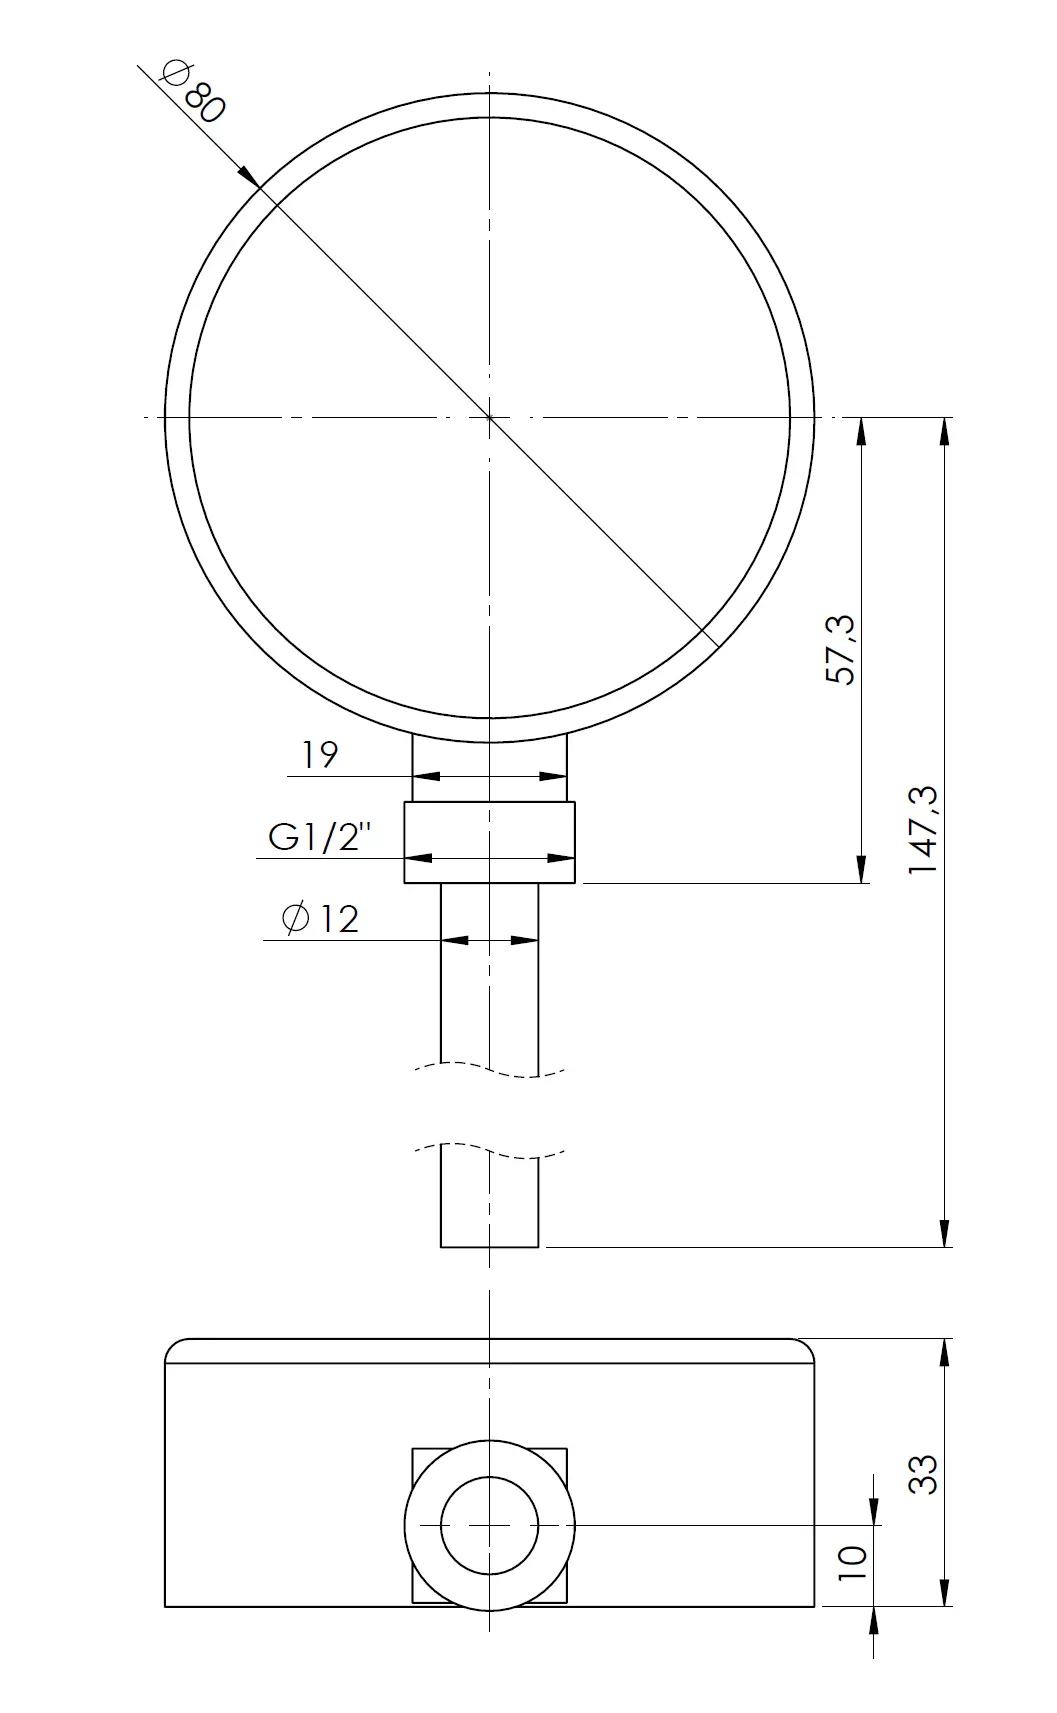 Termometr bimetaliczny BiTh 80, fi80 mm, 0÷60°C, L 100 mm, G1/2" rad, kl. 2 - budowa